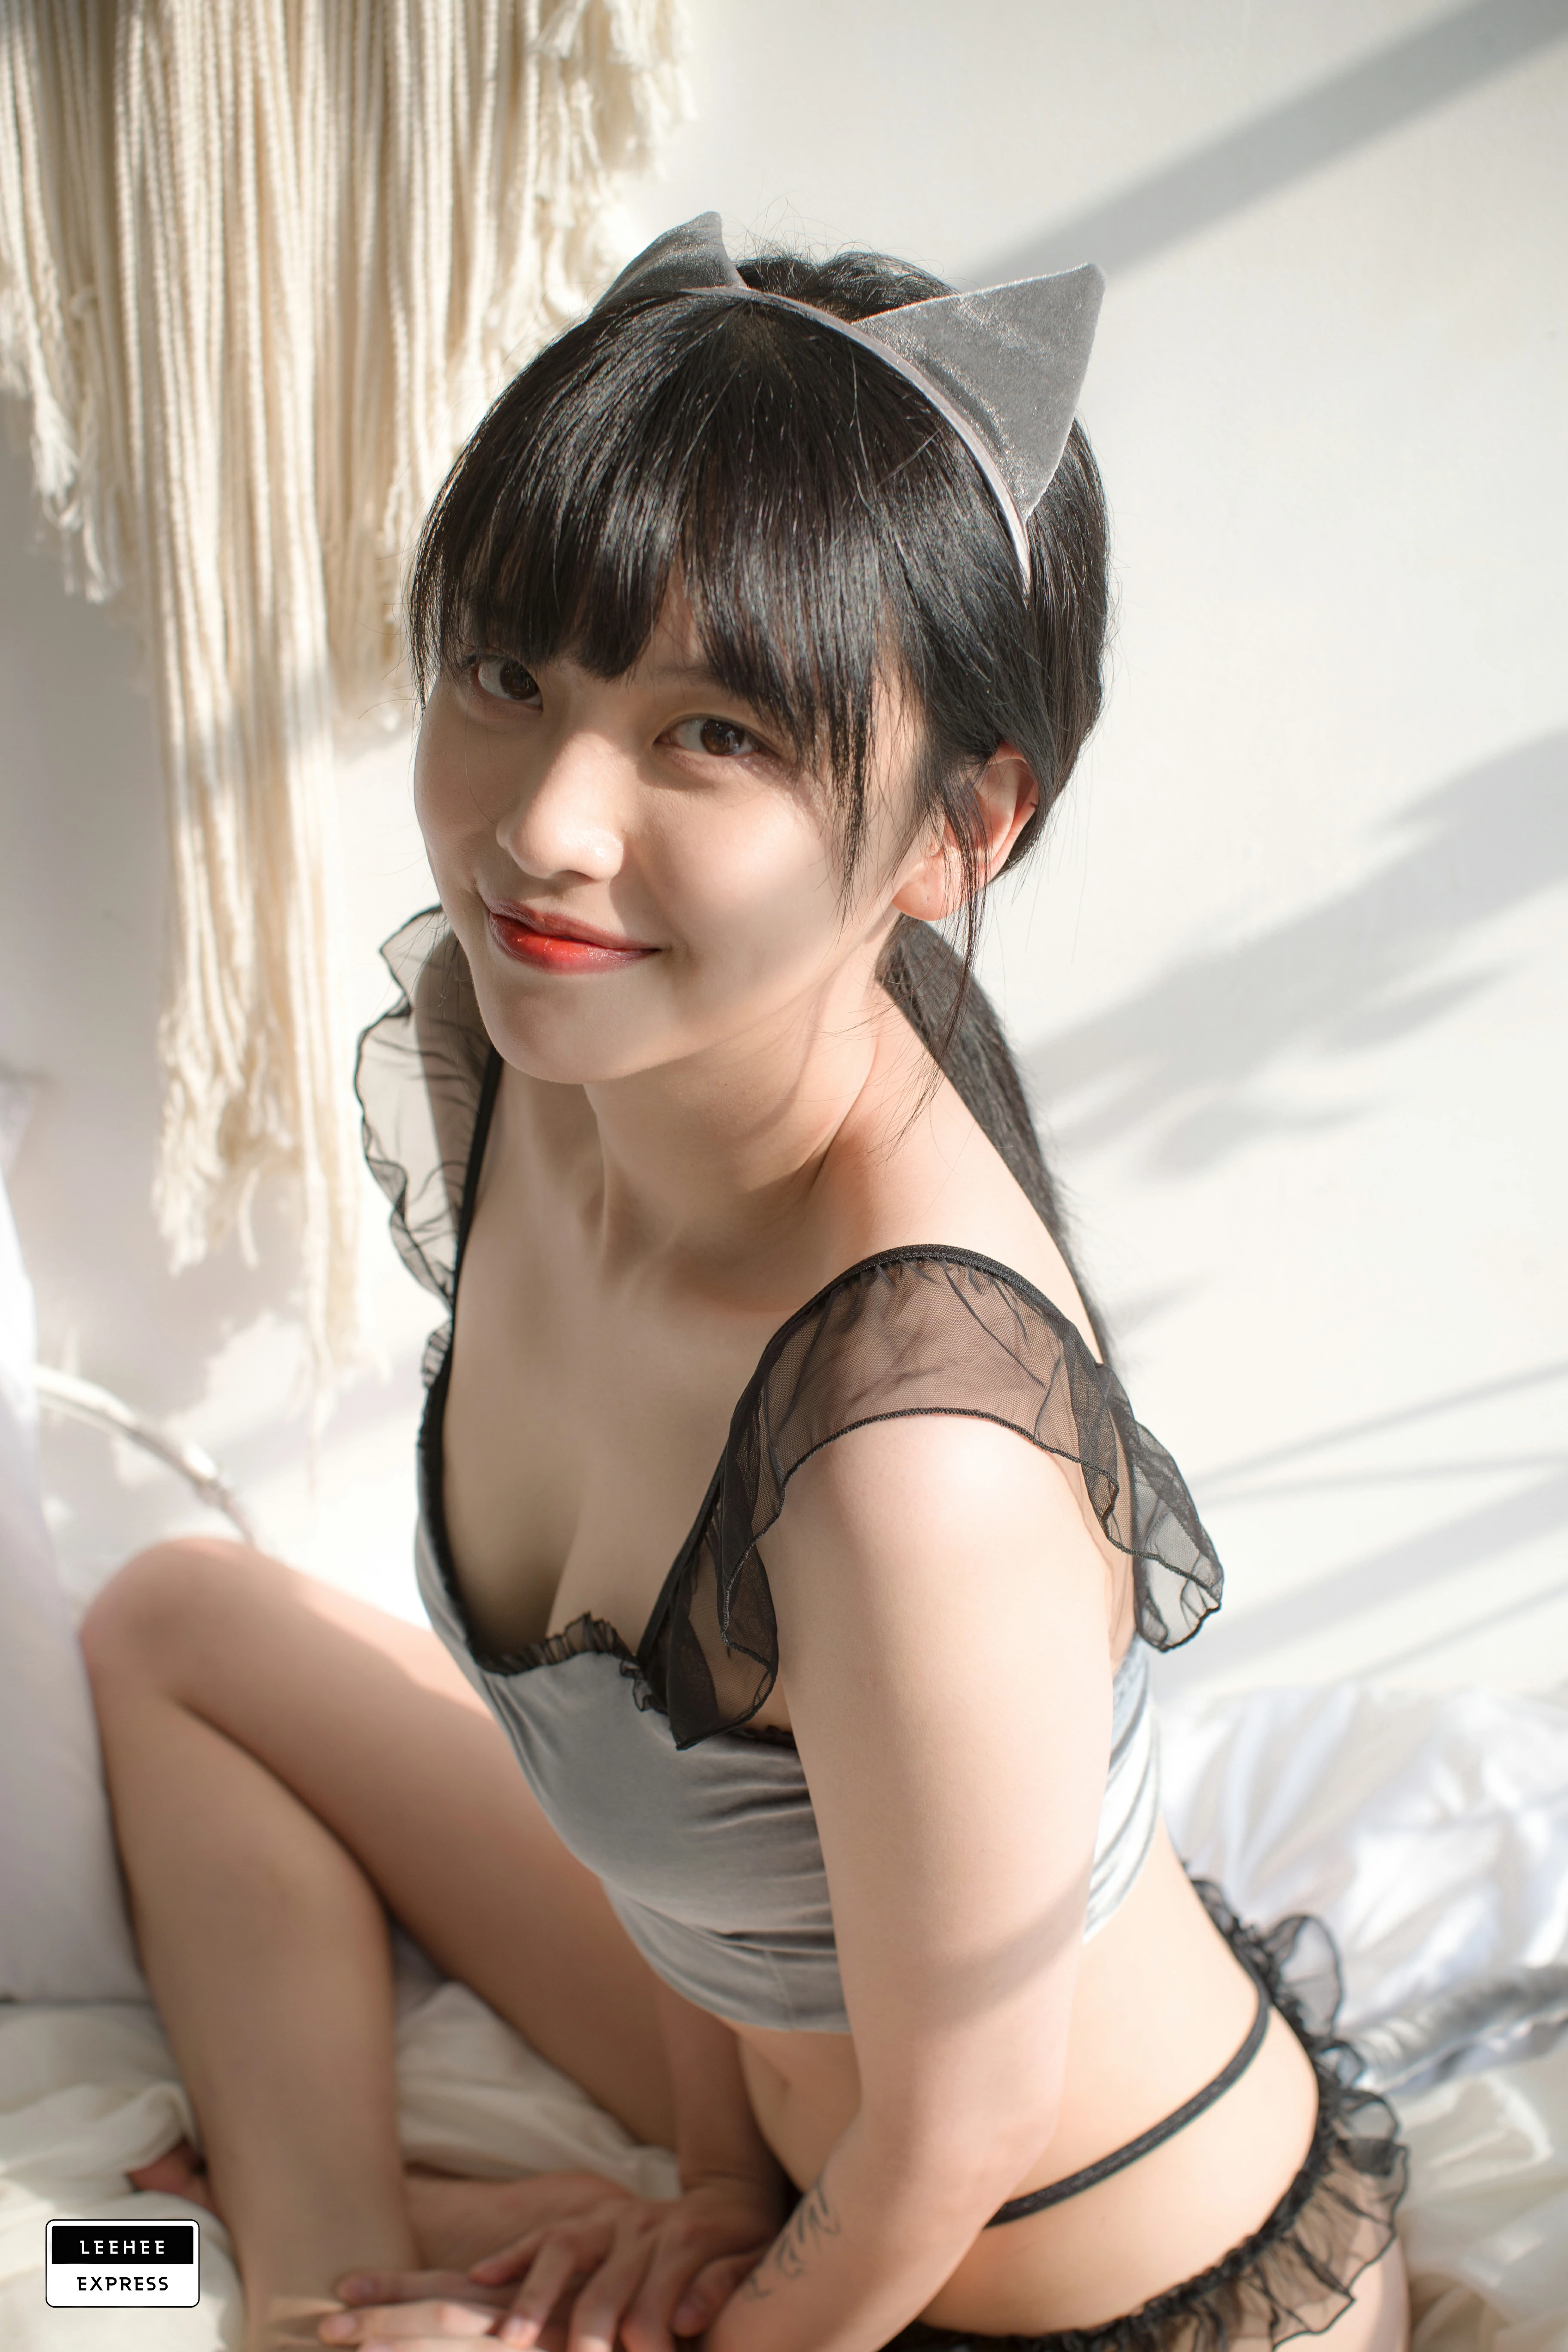 [Leehee Express]LEBE-007 GMS 韩国性感少女黑色透视上衣居家私房写真集,0025